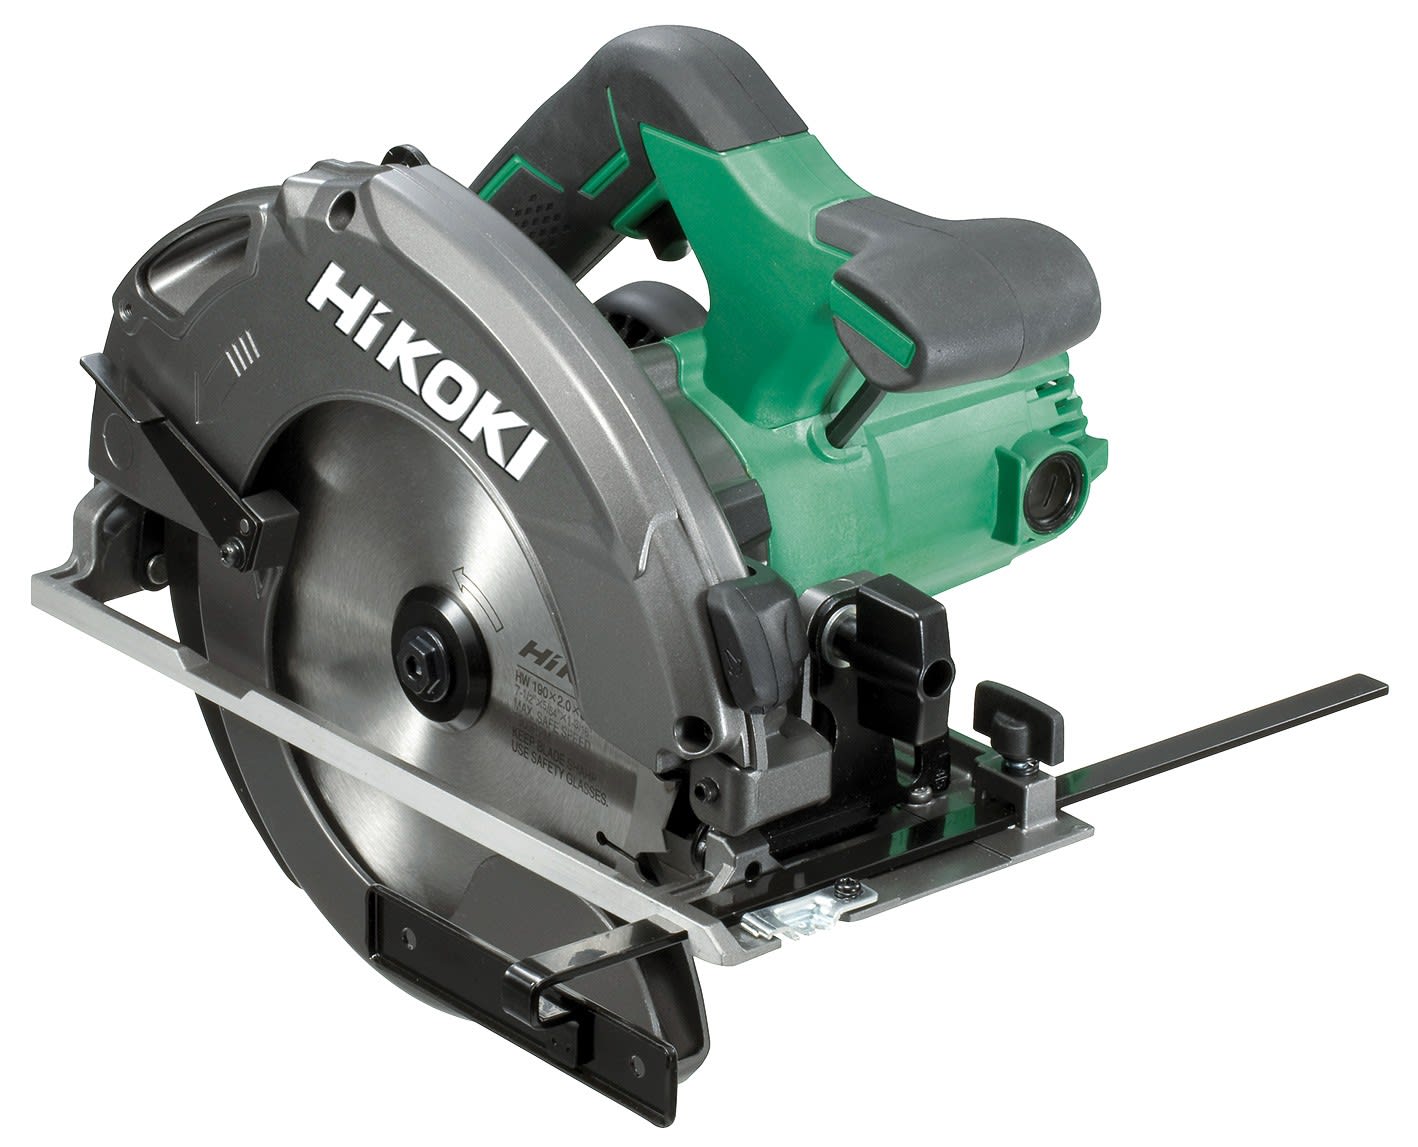 Hikoki Power Tools - Scie circulaire Ø190mm cap.66mm 1300W en coffret, lame carbure, raccord aspirat.